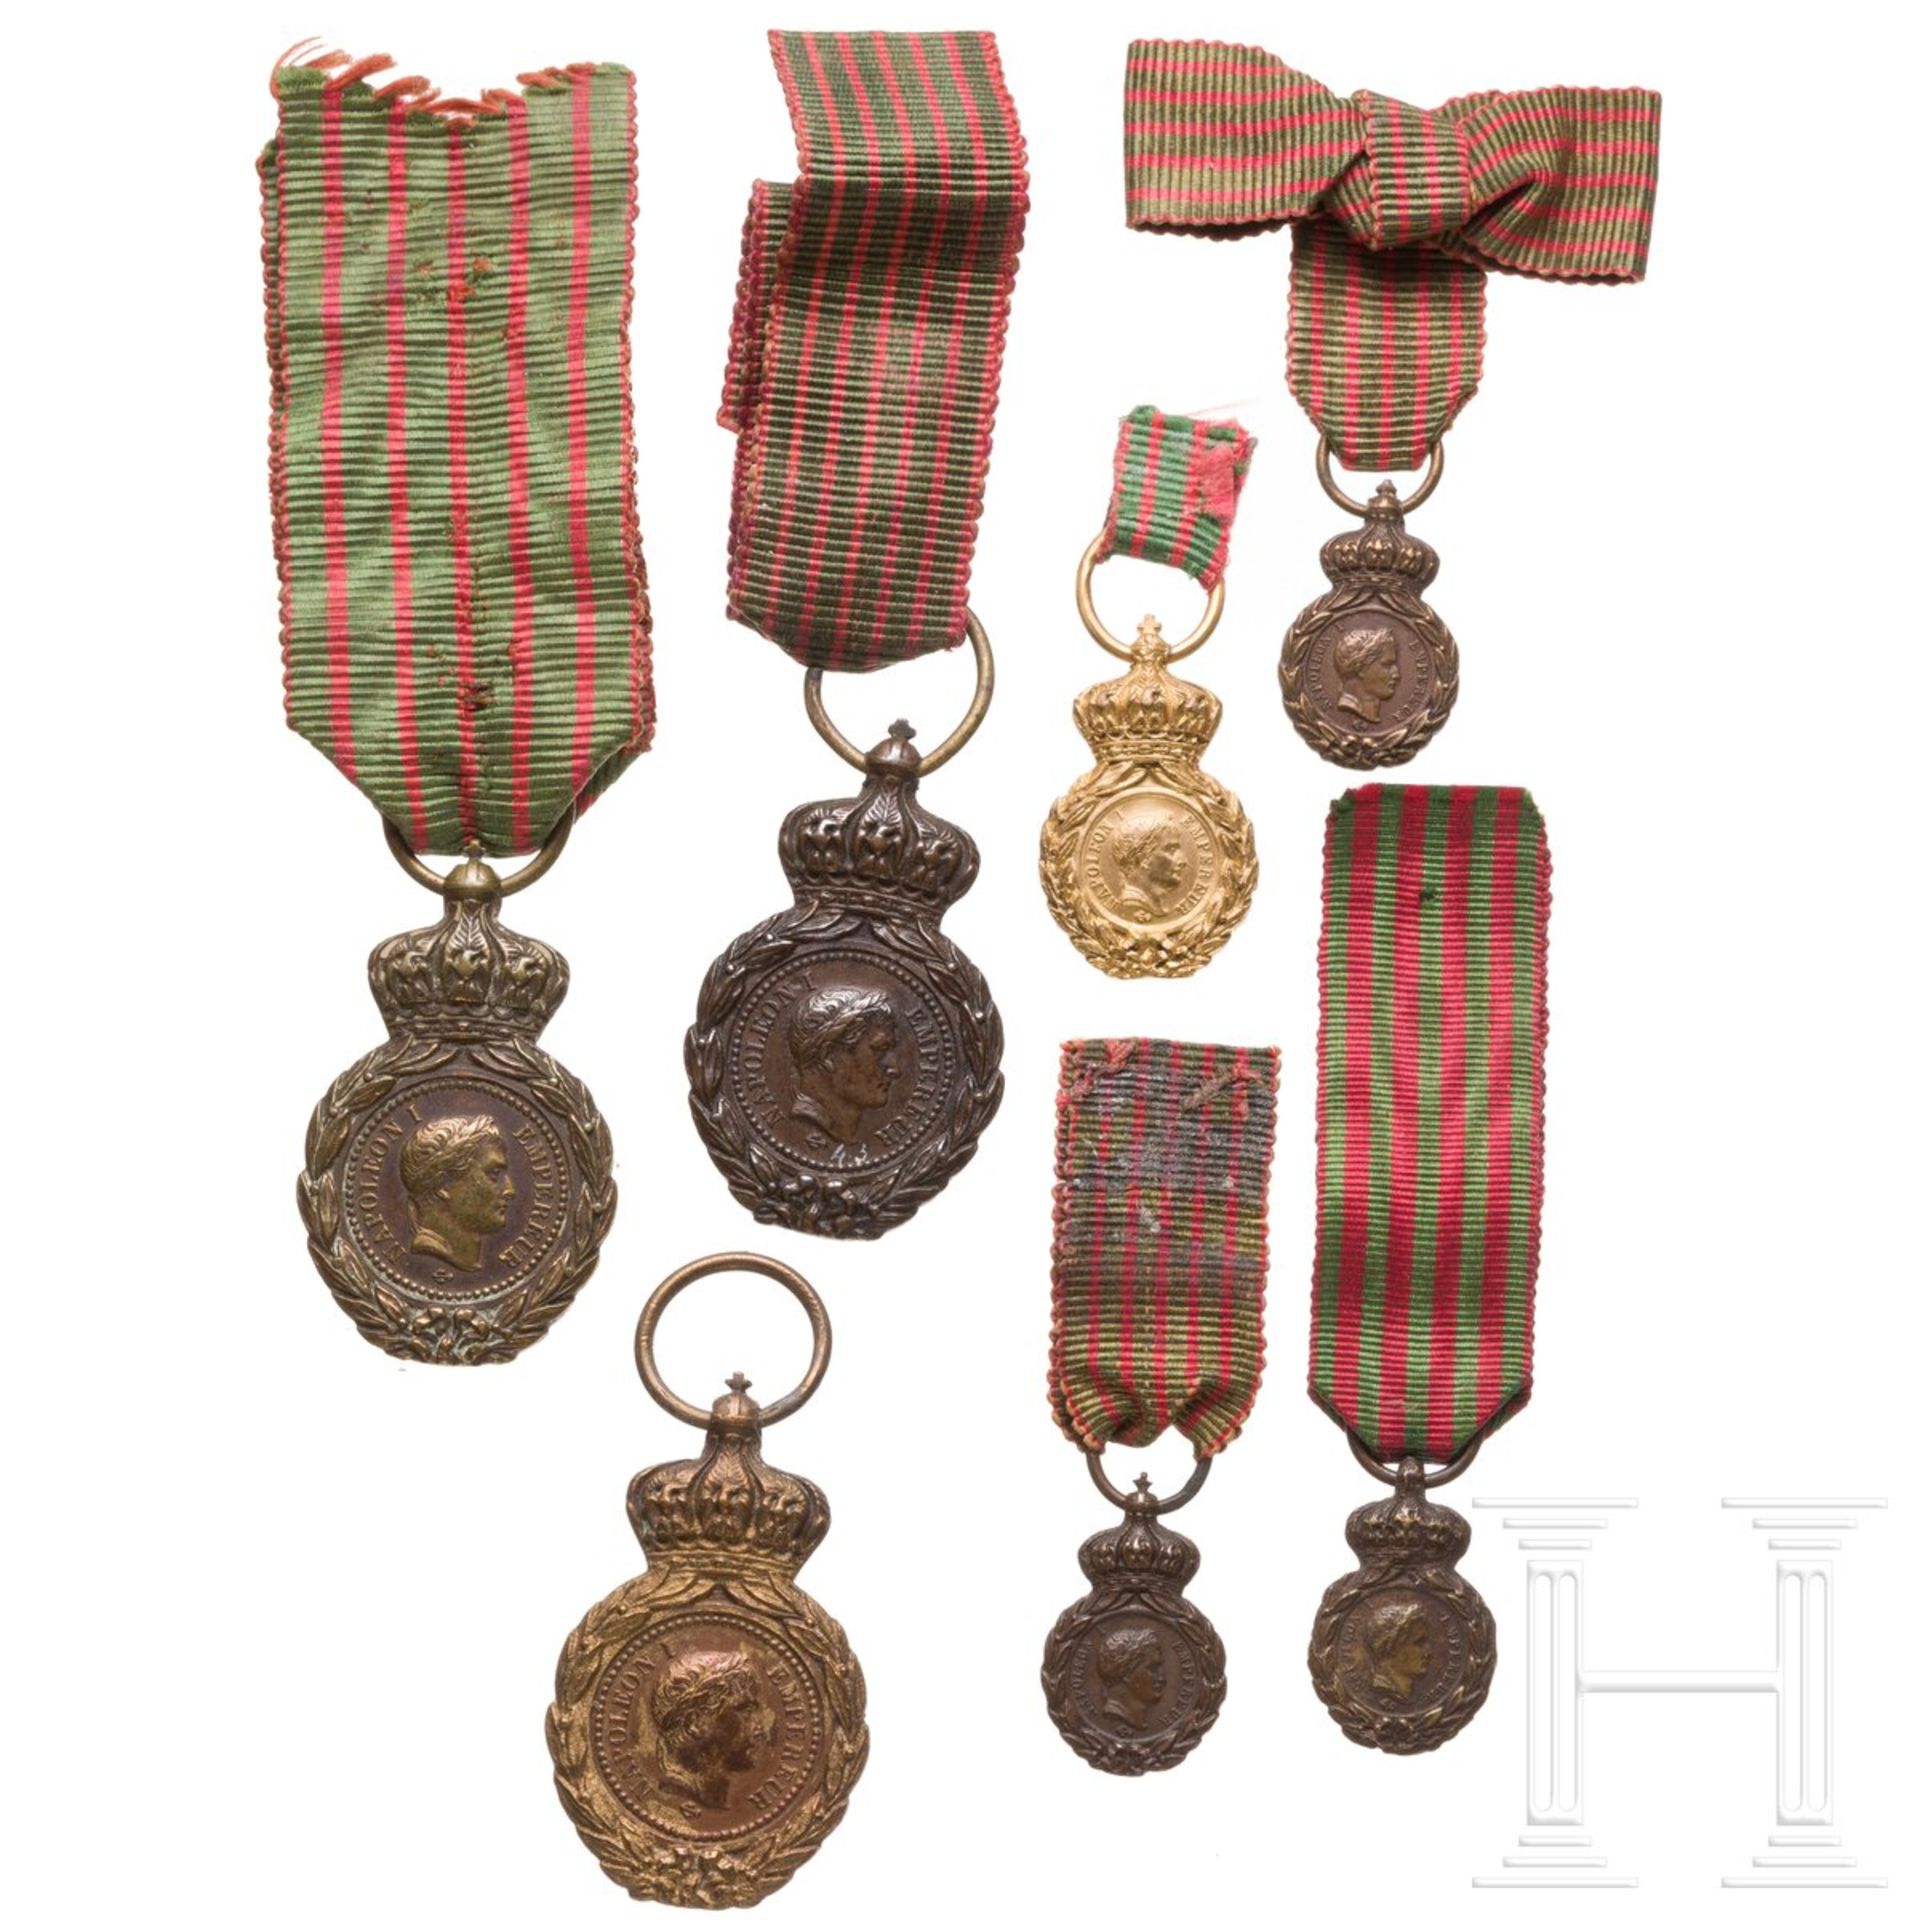 St.-Helena-Medaille - drei Reduktionen und vier Miniaturen